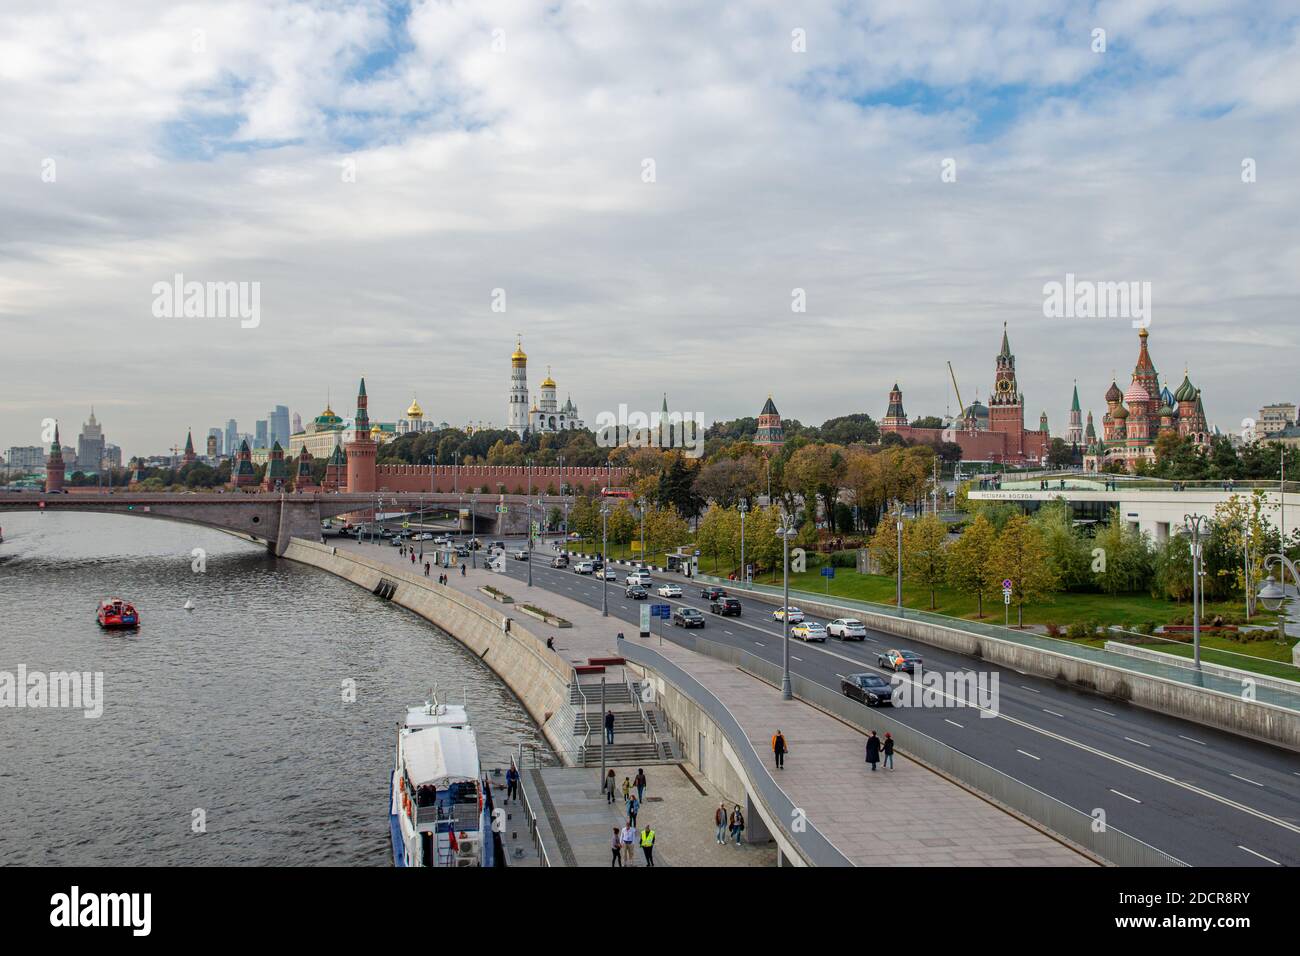 MOSKAU, RUSSLAND - 18. NOVEMBER 2020: Panorama des Moskauer Kremls. Kremlin Uhrturm auf dem Roten Platz in Moskau, Russland. St. Basil's Cathedral auf der Stockfoto